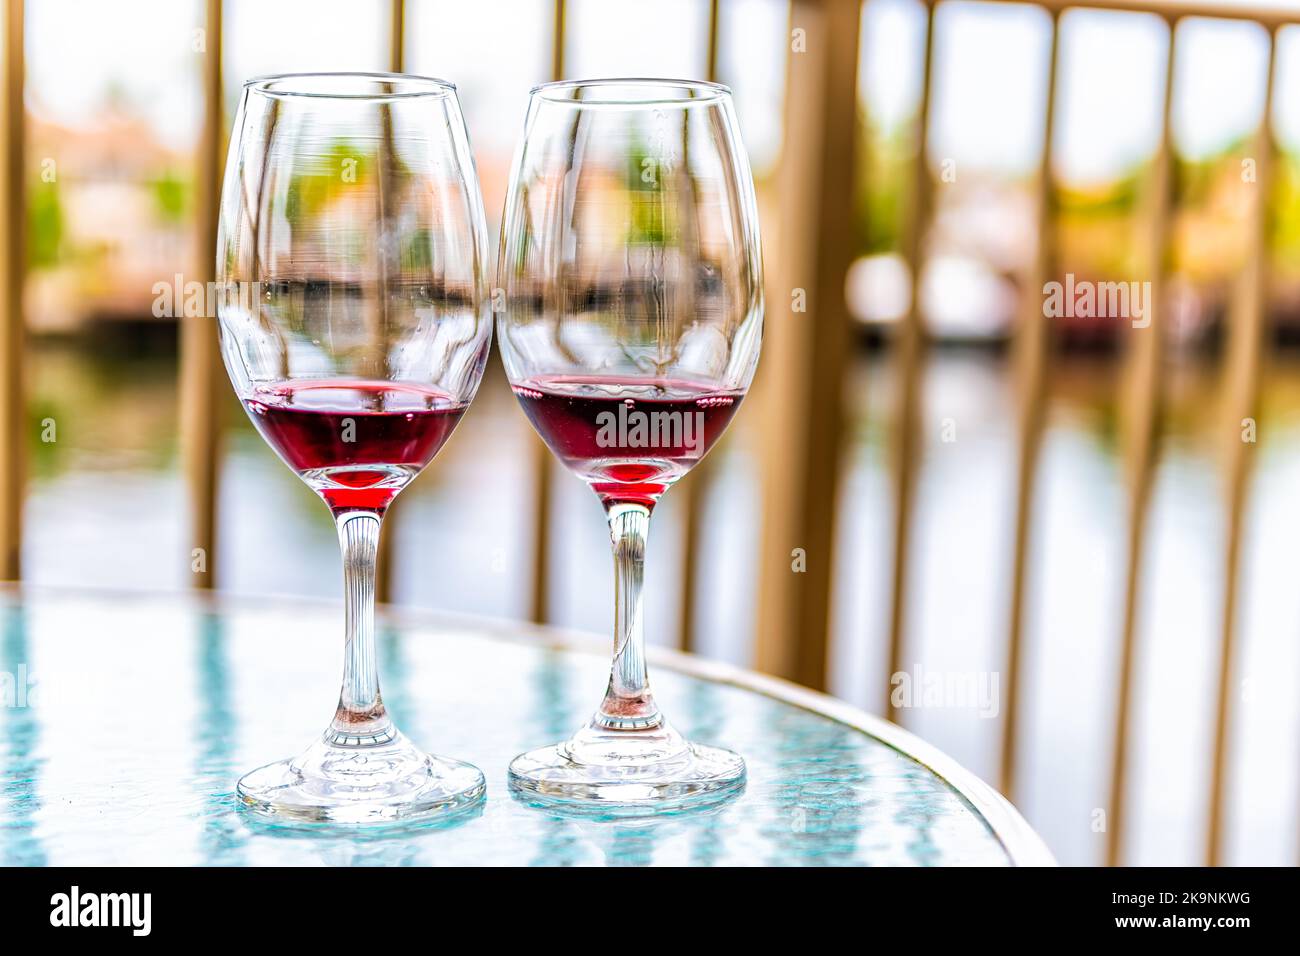 Deux verres de vin rouge français coulé Cotes du Rhone sur un balcon en verre à Miami, Floride avec vue Banque D'Images